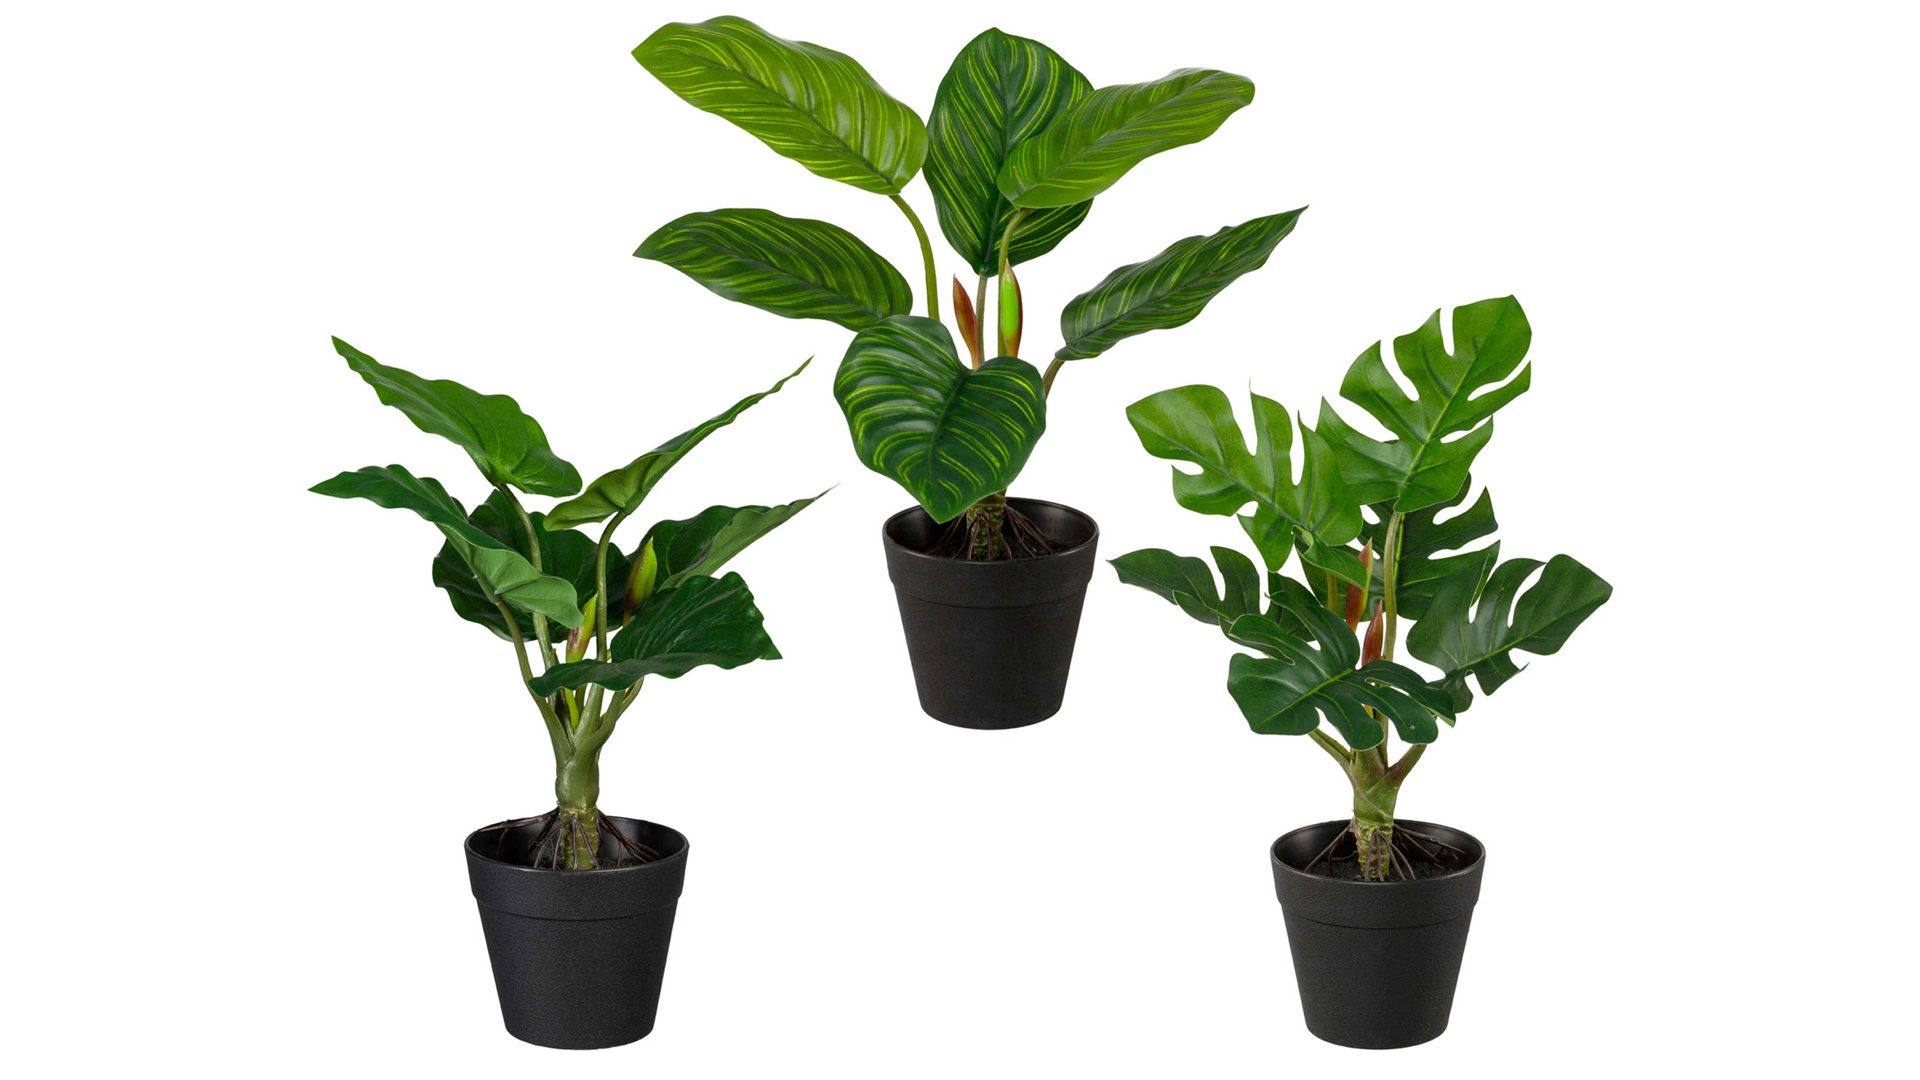 Pflanze Gasper aus Kunststoff in Grün Grünpflanzen-Mix grüner Kunststoff & schwarze Töpfe – dreiteilig, Höhe ca. 26 cm